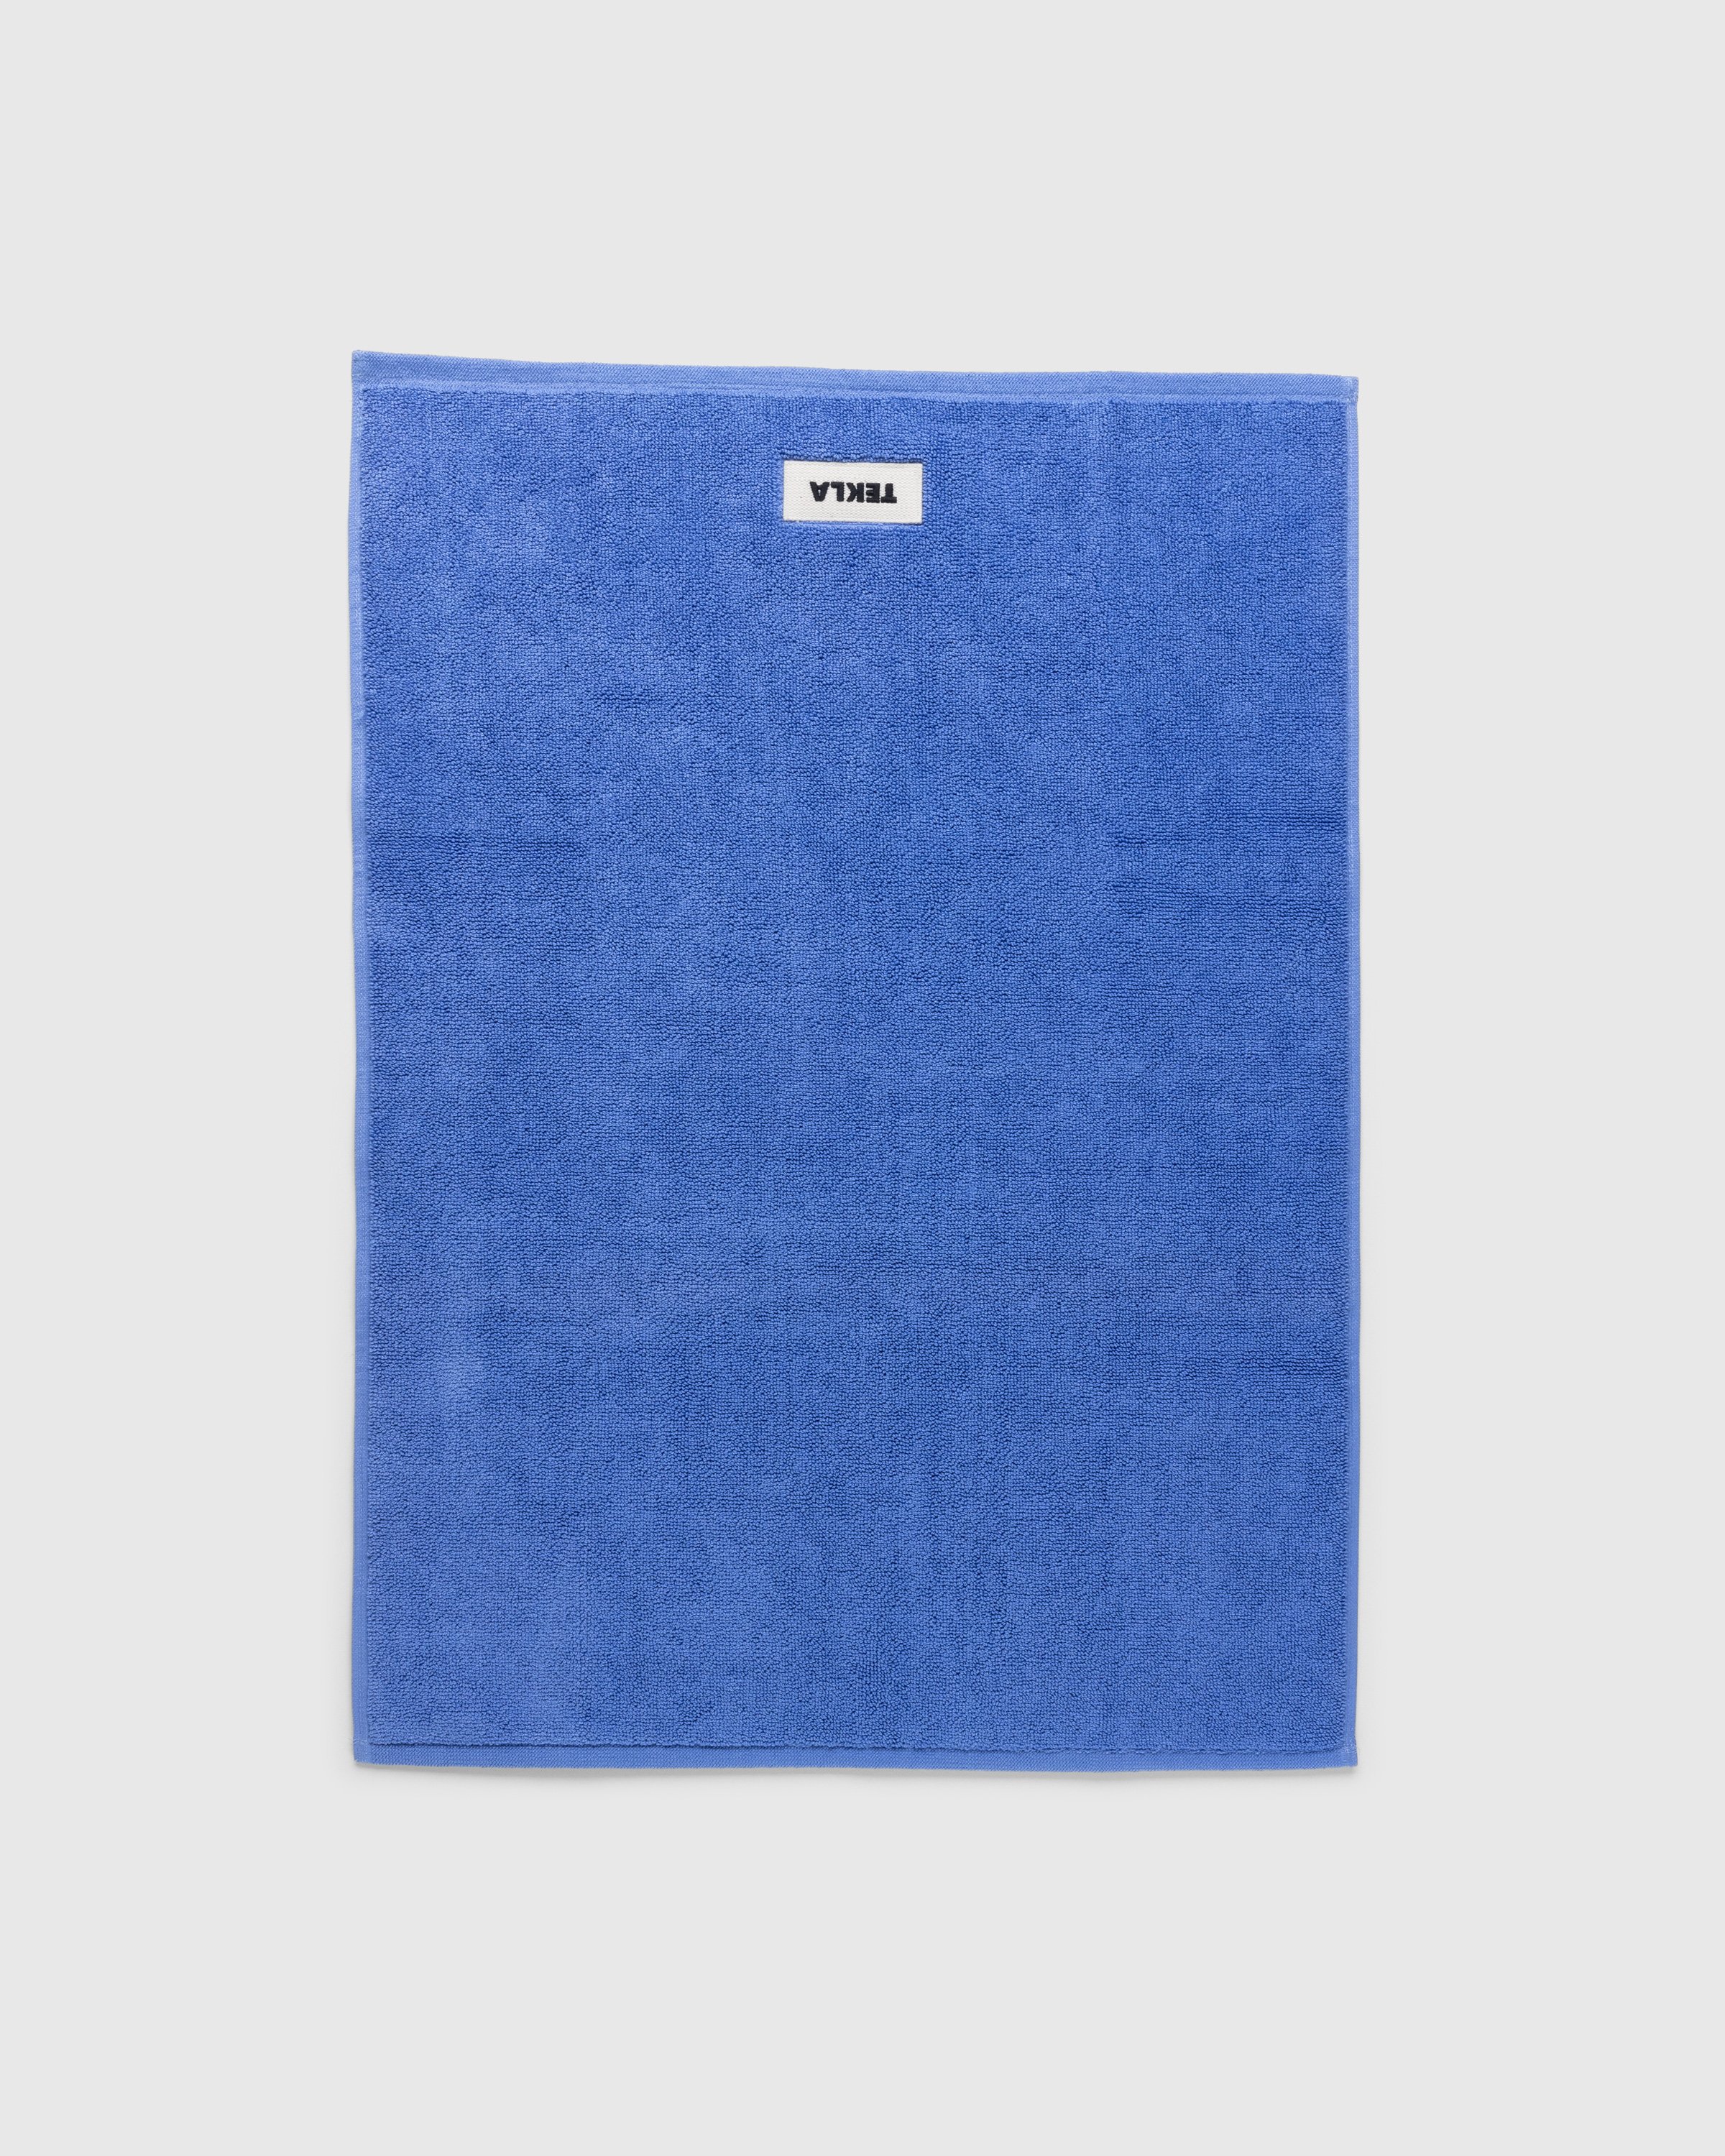 Tekla - Bath Mat Solid Clear Blue - Lifestyle - Blue - Image 2